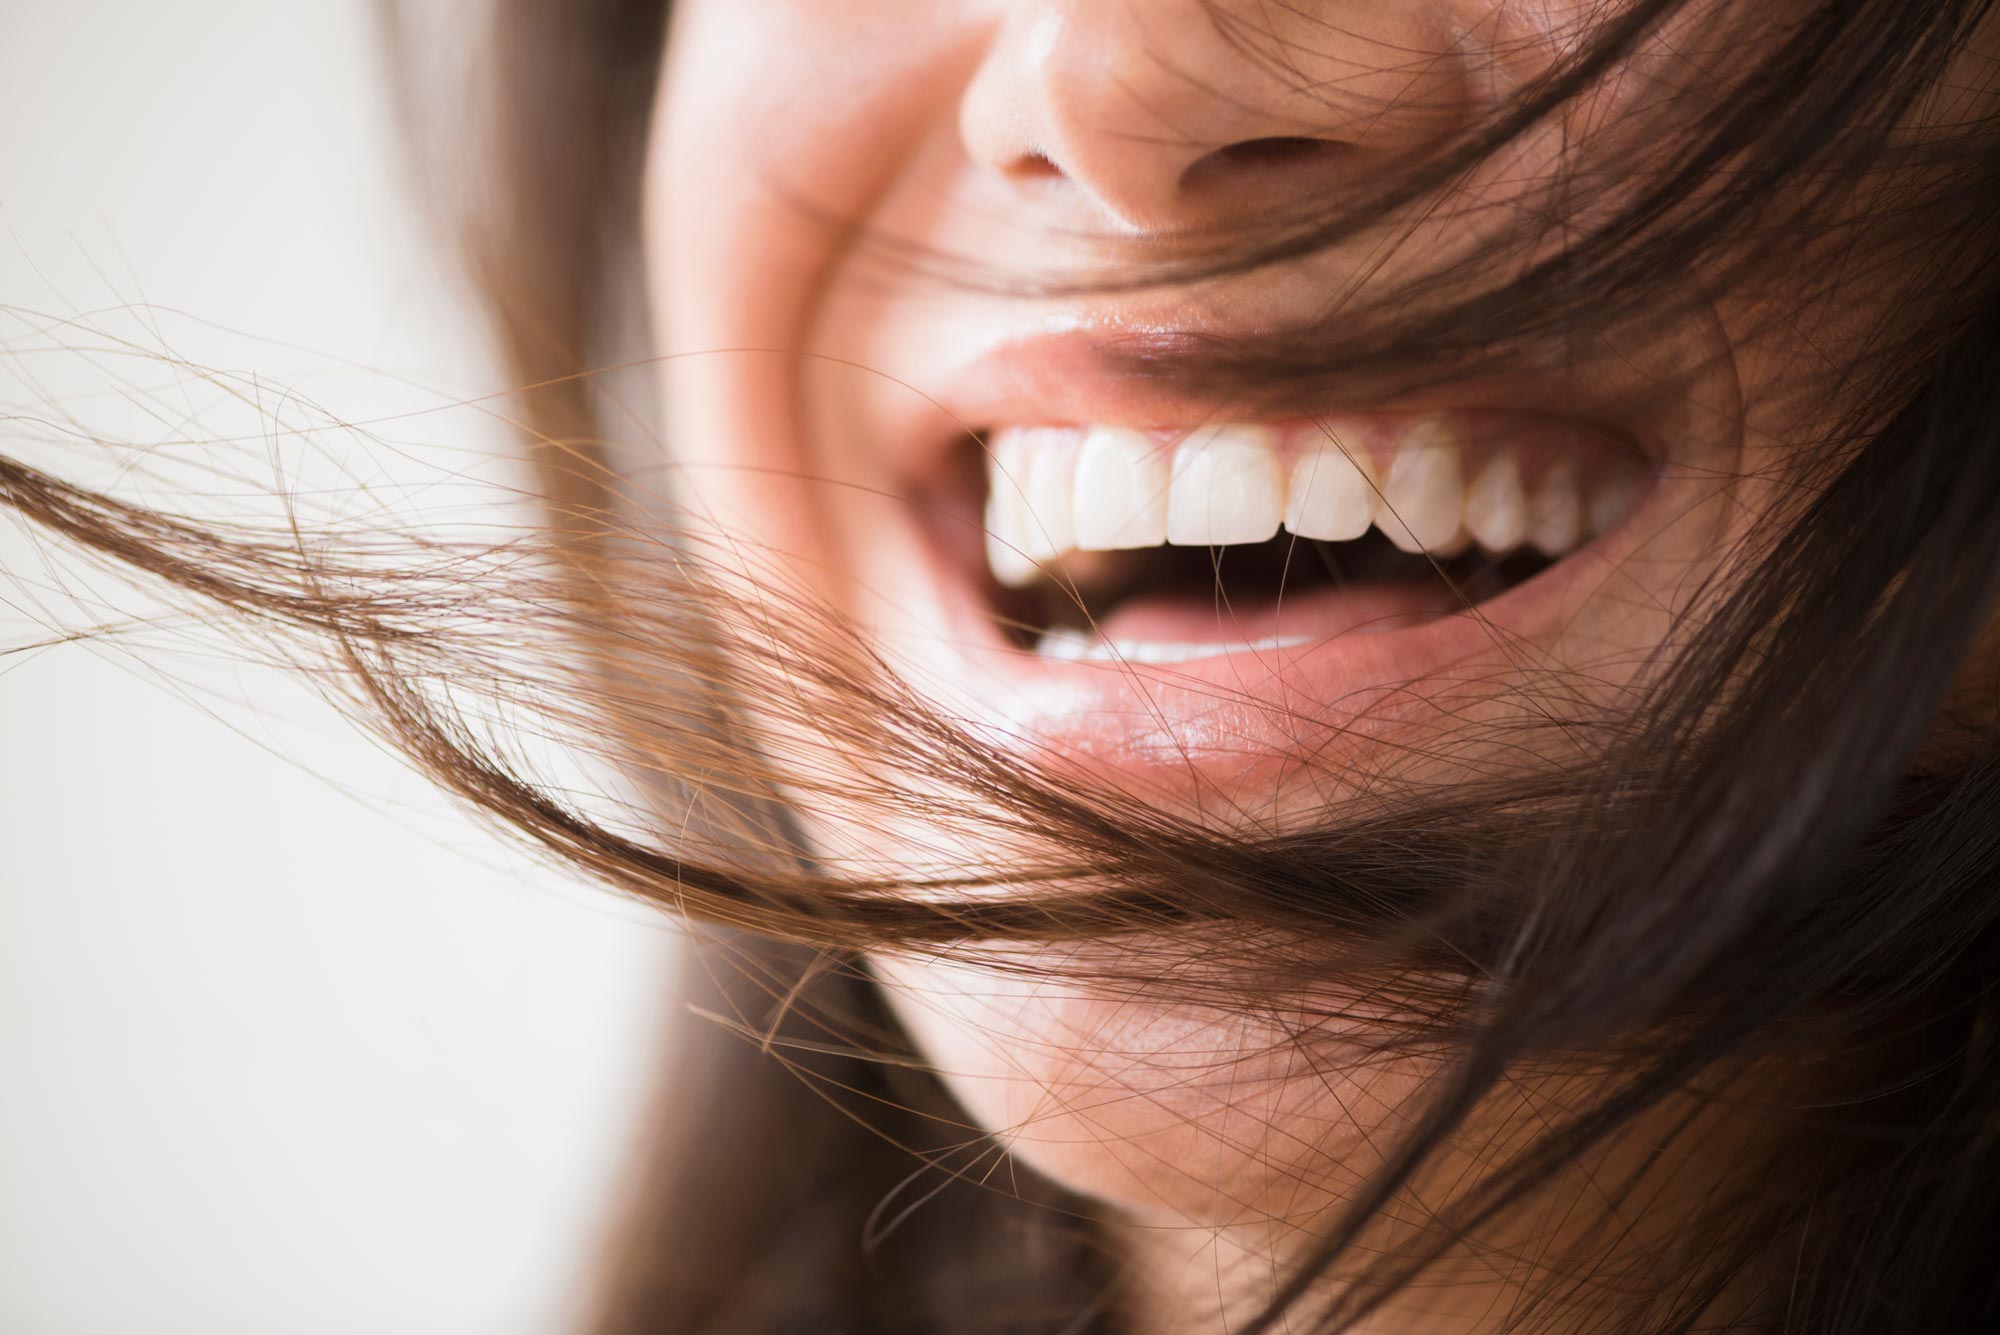 En närbild på en kvinnas mun där tänderna syns